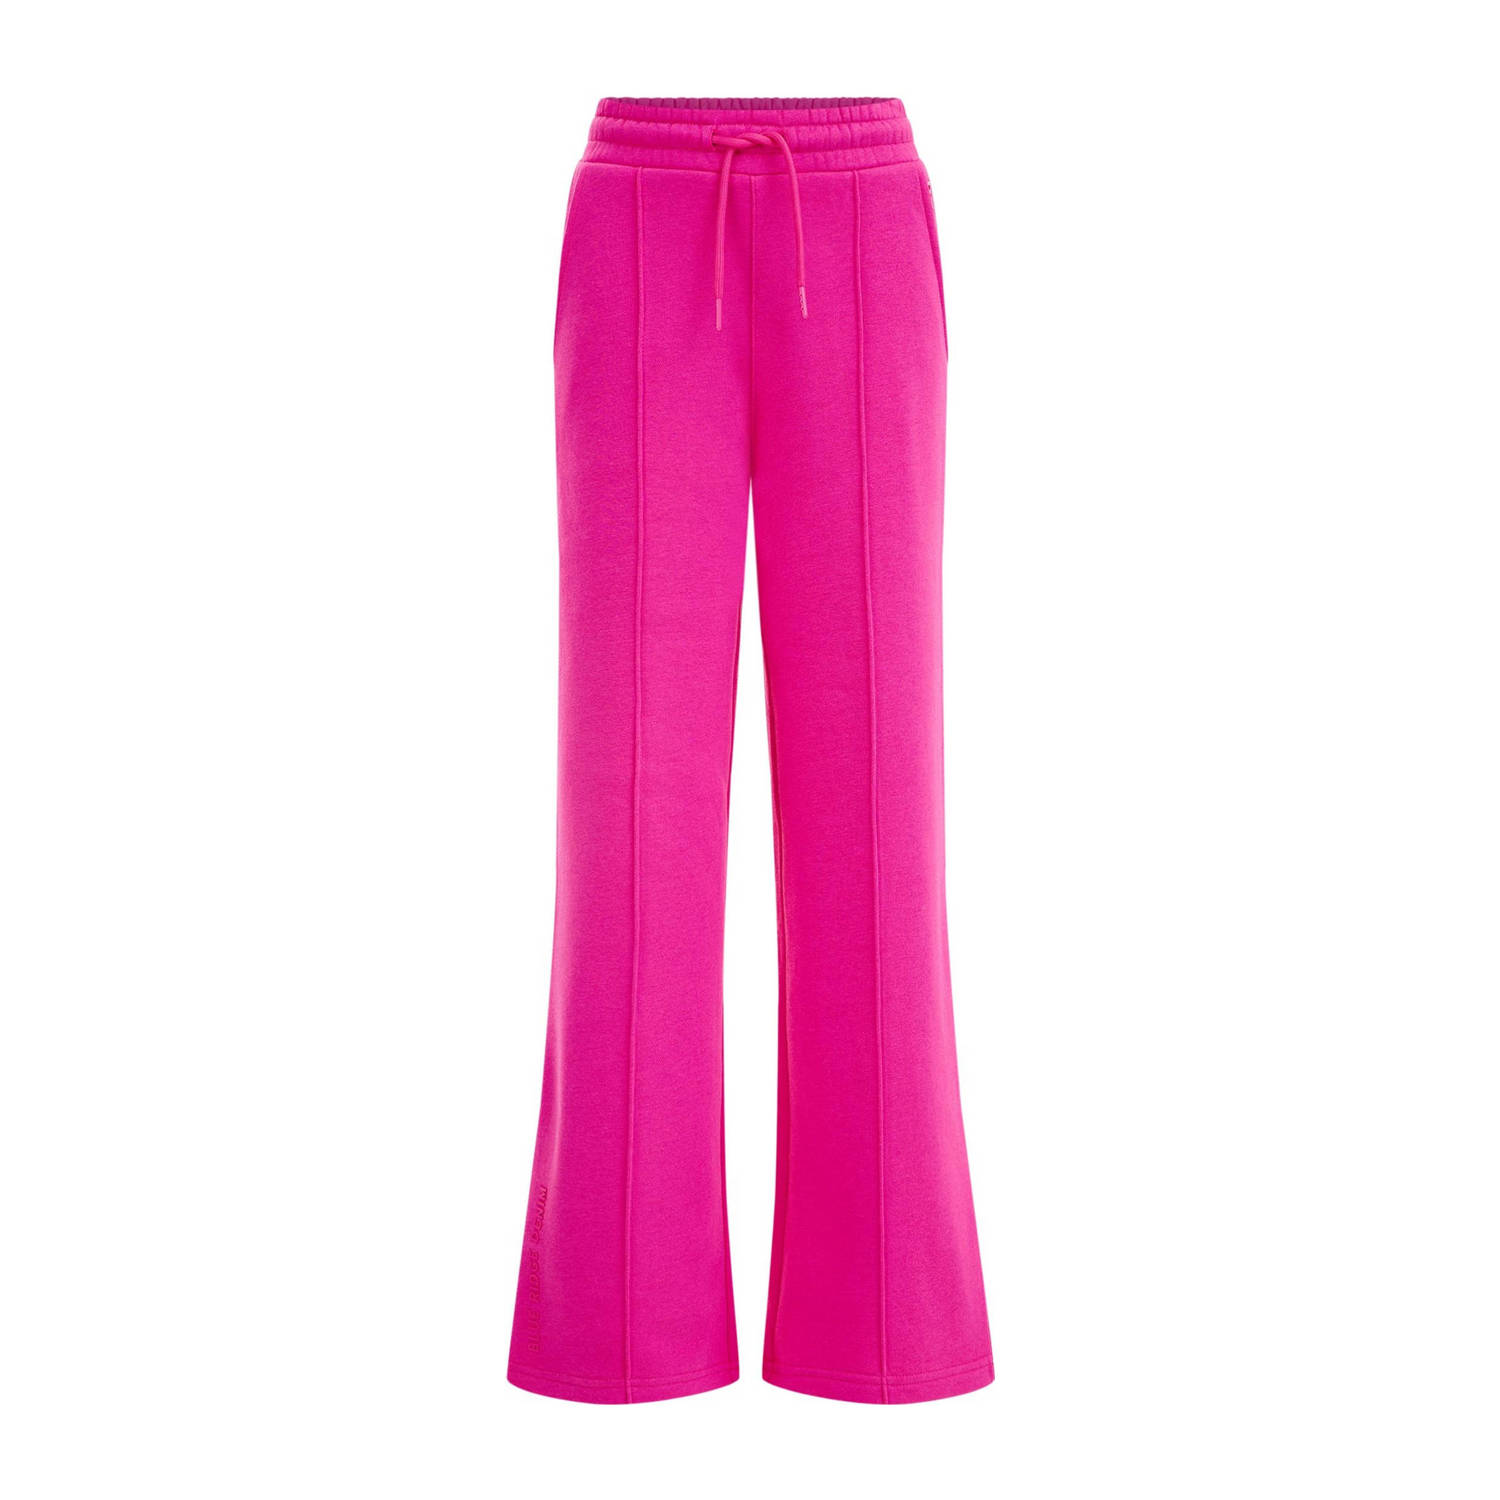 WE Fashion Blue Ridge straight fit broek roze Meisjes Sweat Effen 140